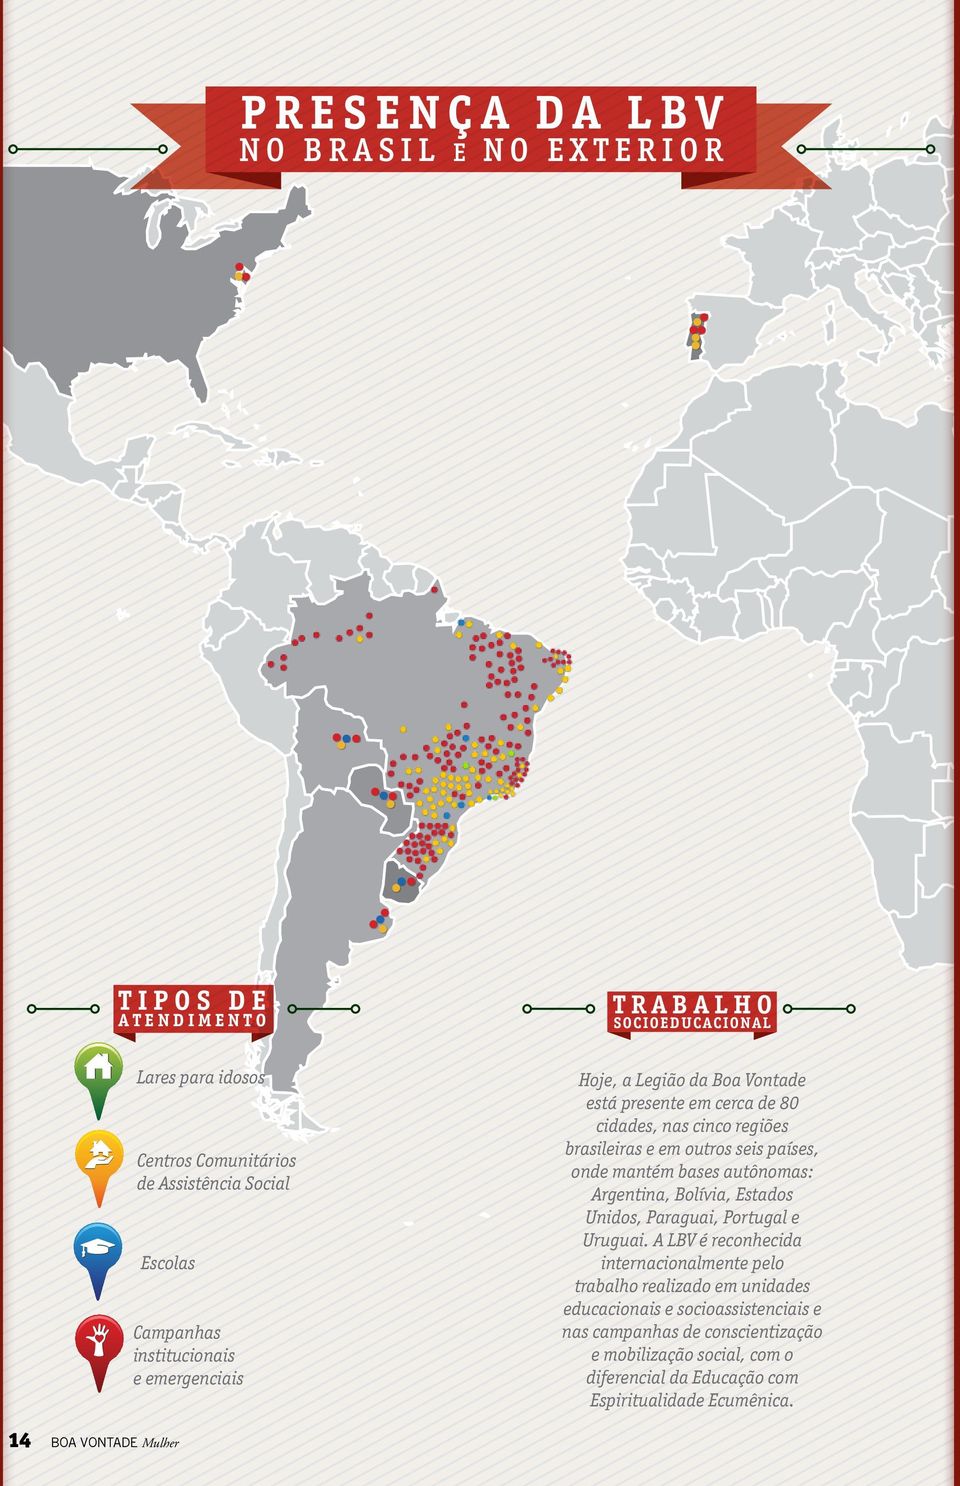 bases autônomas: Argentina, Bolívia, Estados Unidos, Paraguai, Portugal e Uruguai.